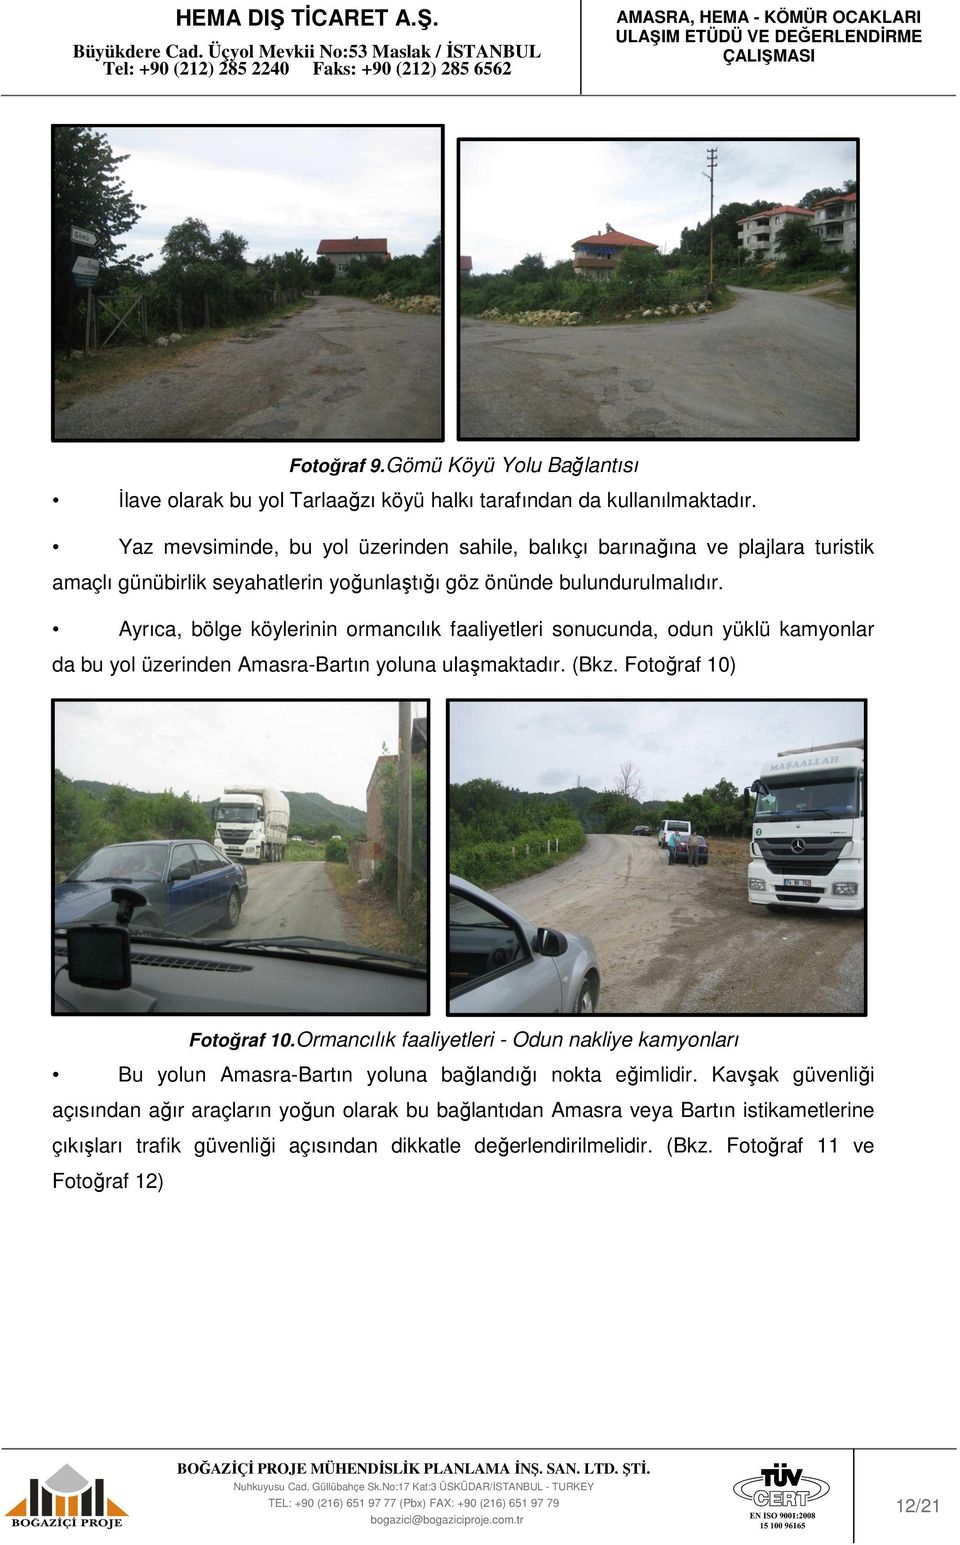 Ayrıca, bölge köylerinin ormancılık faaliyetleri sonucunda, odun yüklü kamyonlar da bu yol üzerinden Amasra-Bartın yoluna ulaşmaktadır. (Bkz. Fotoğraf 10) Fotoğraf 10.